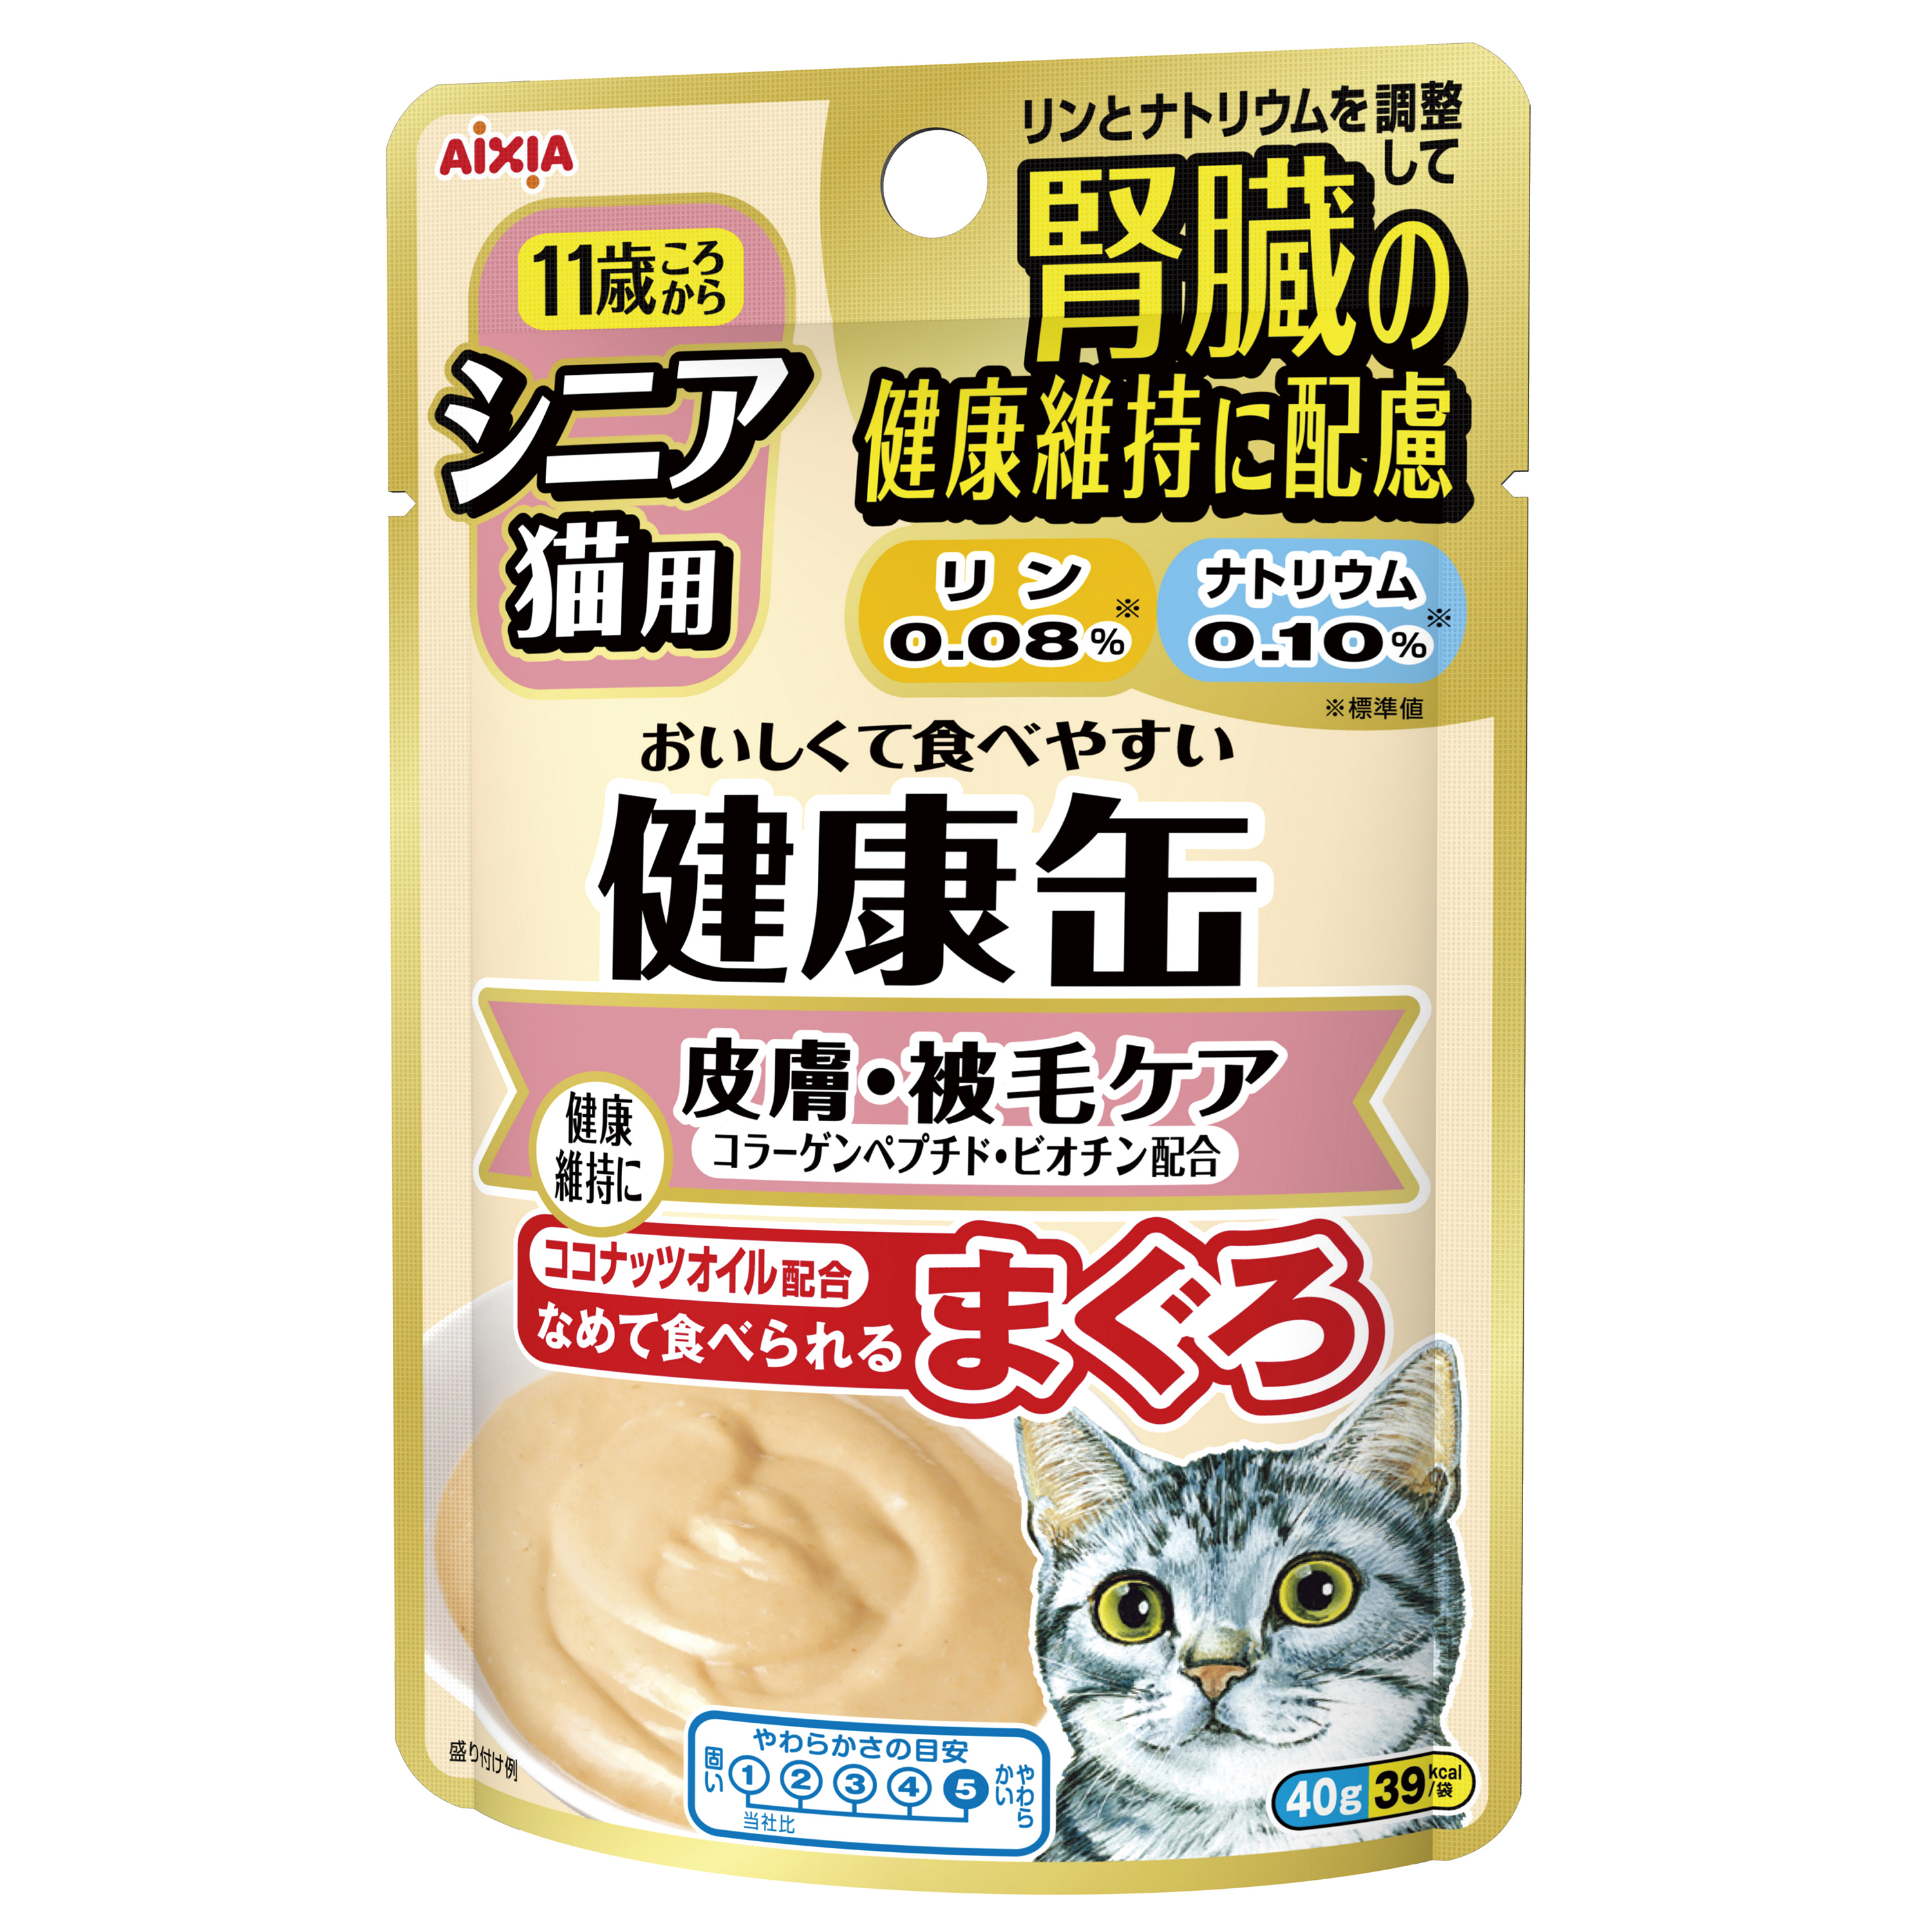 健康缶パウチ シニア猫用 皮膚・被毛ケア 40g